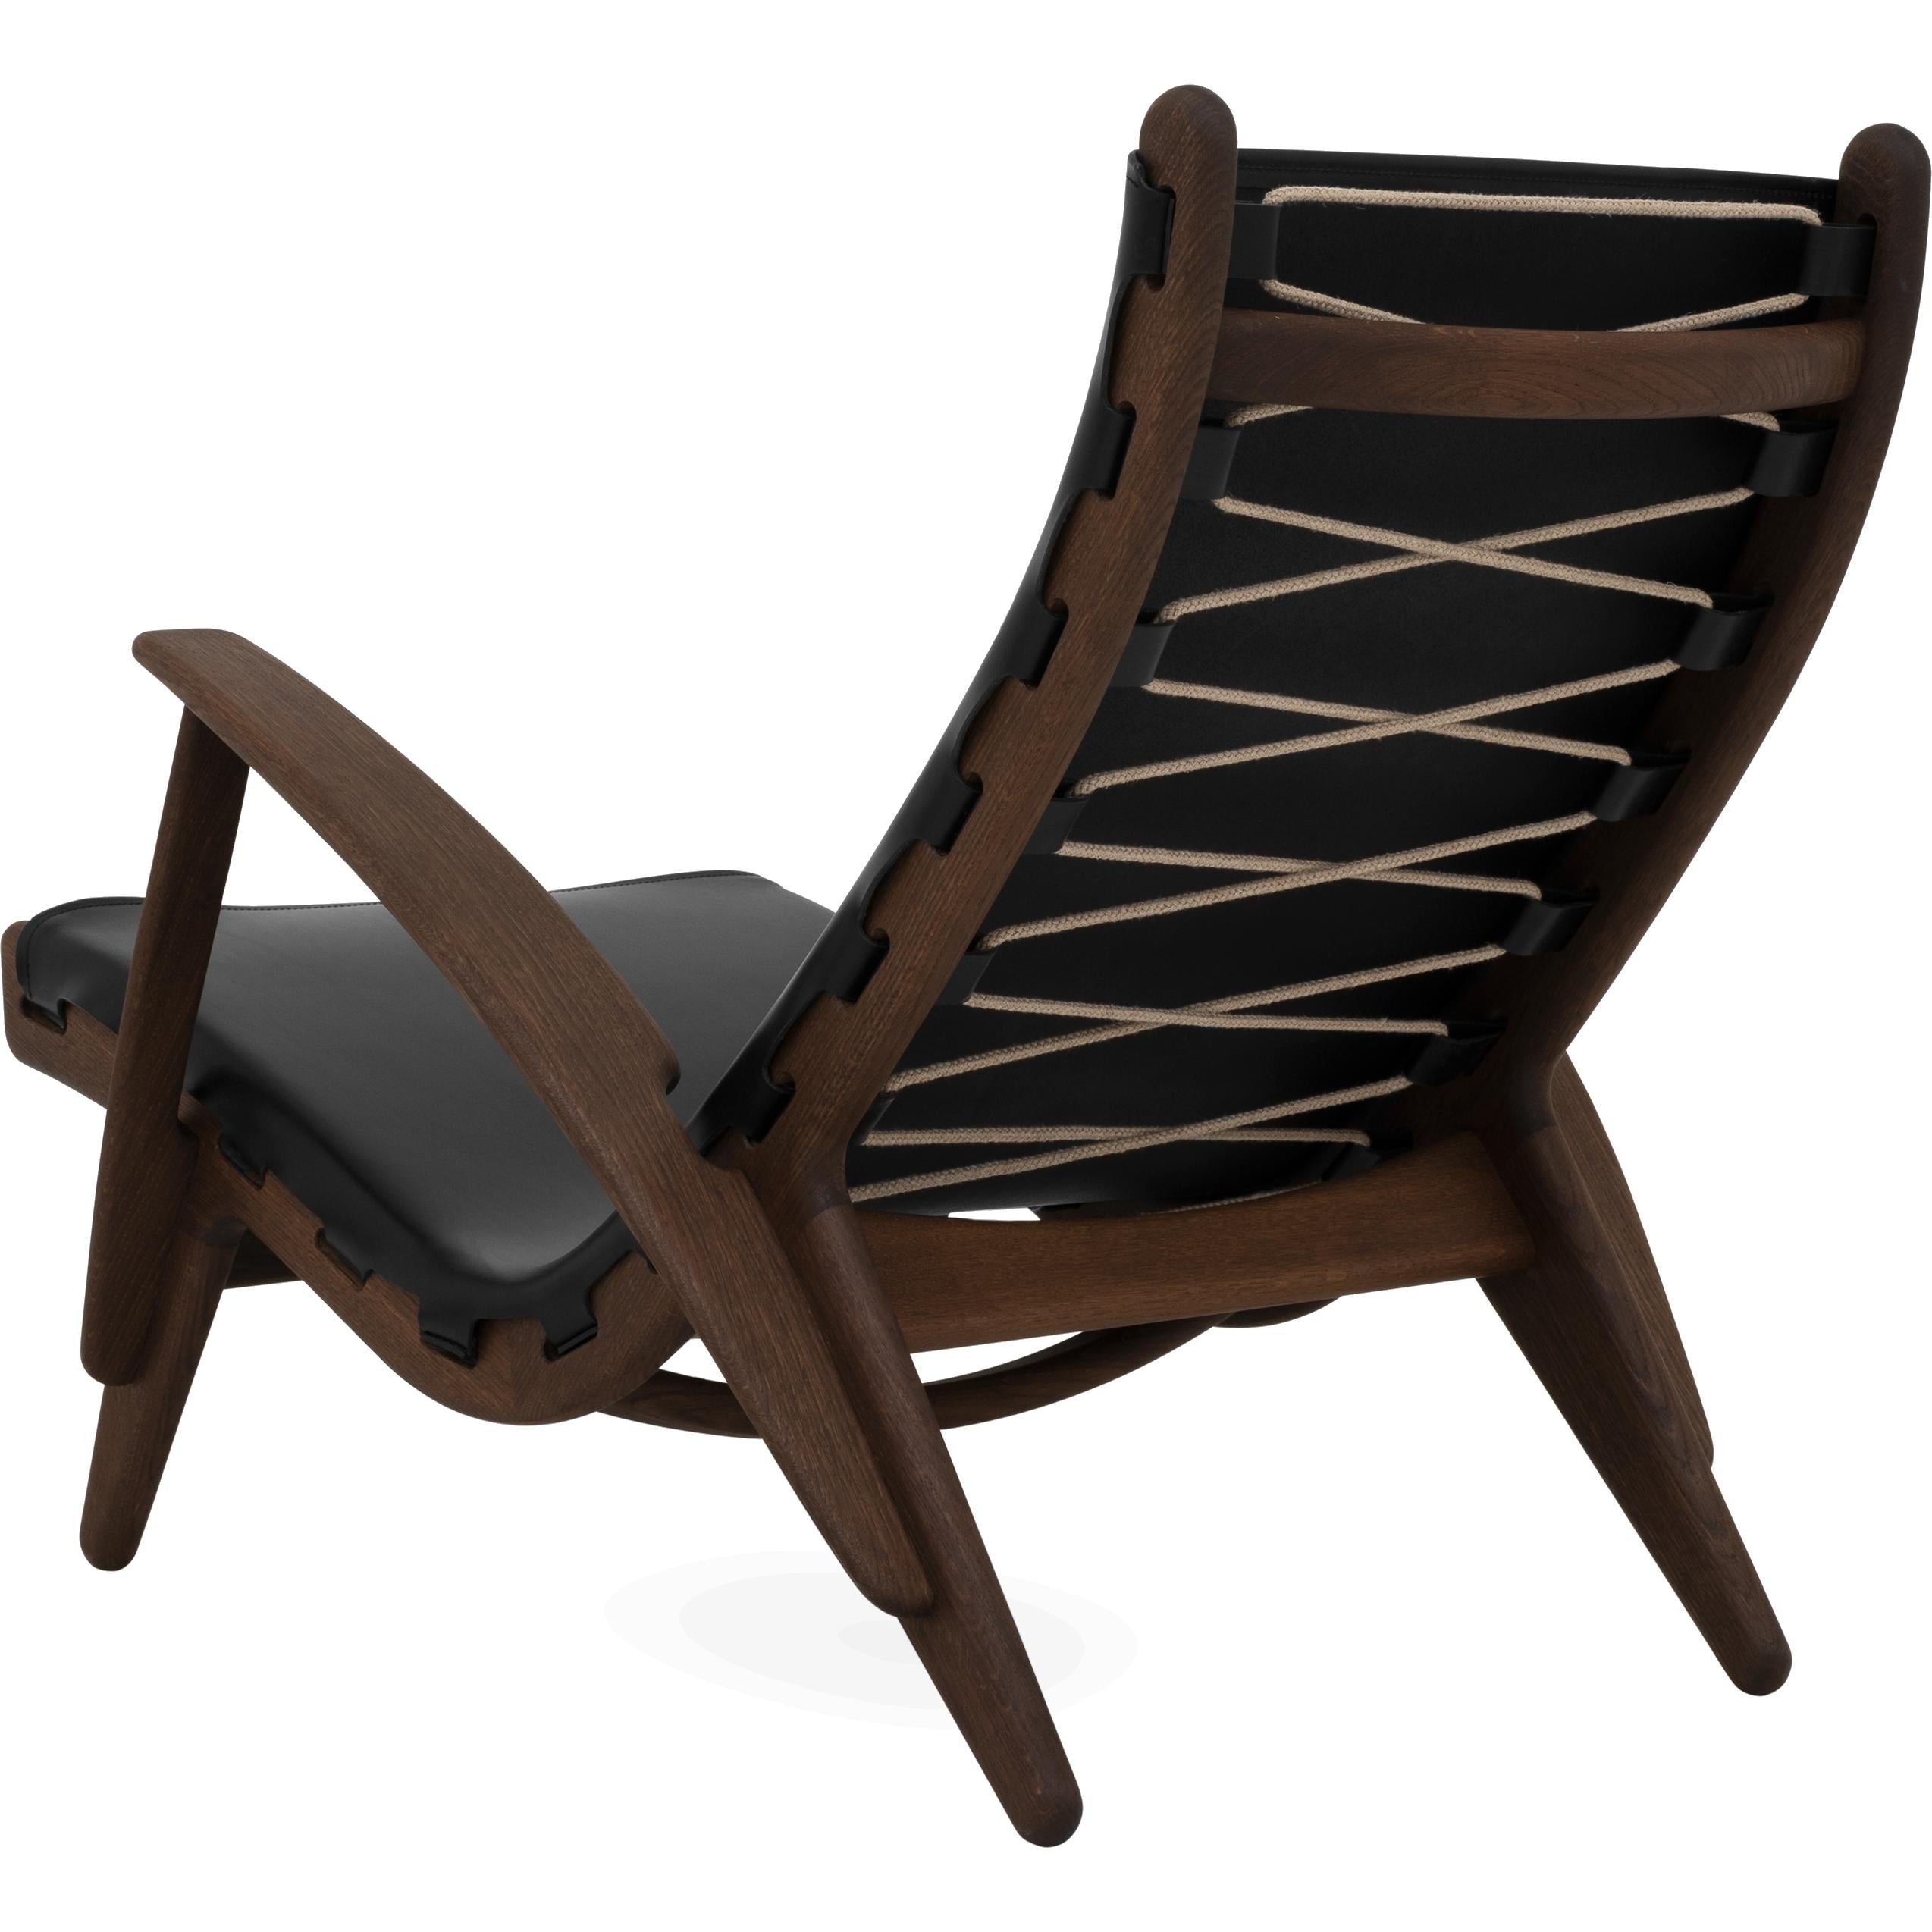 Klassik Studio PV King's stoel gerookt eiken, zwart leer